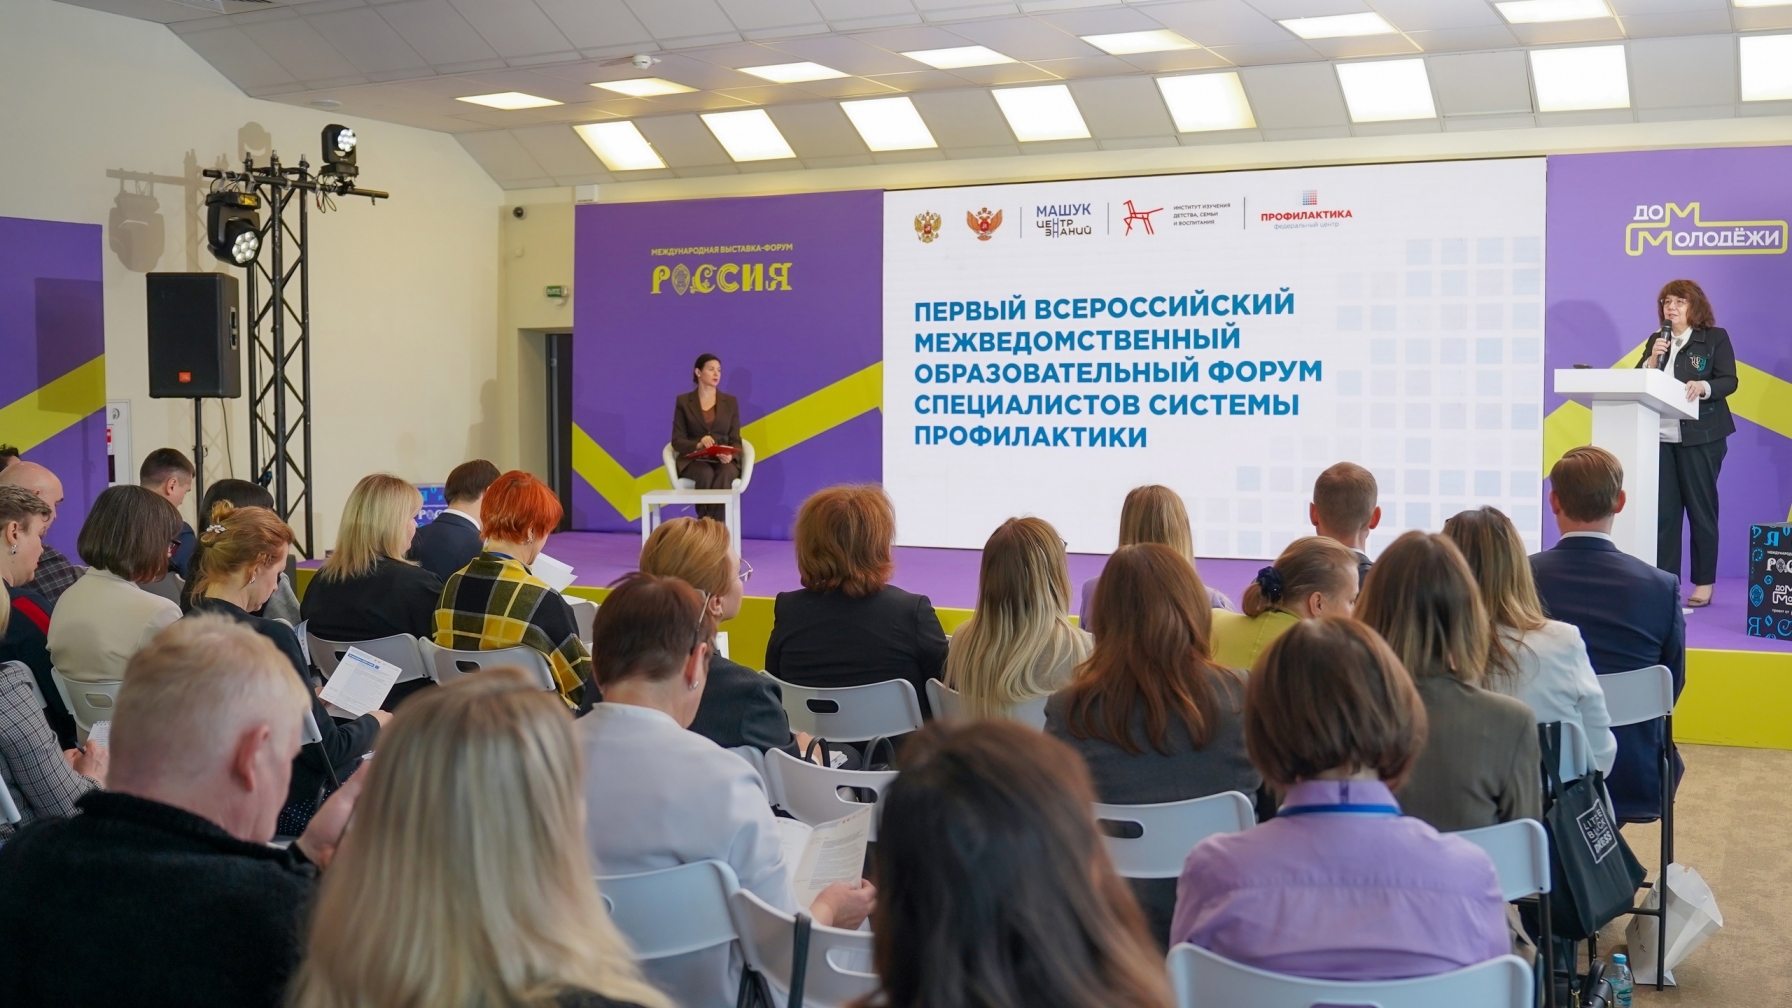 Первый Всероссийский межведомственный образовательный форум специалистов системы профилактики